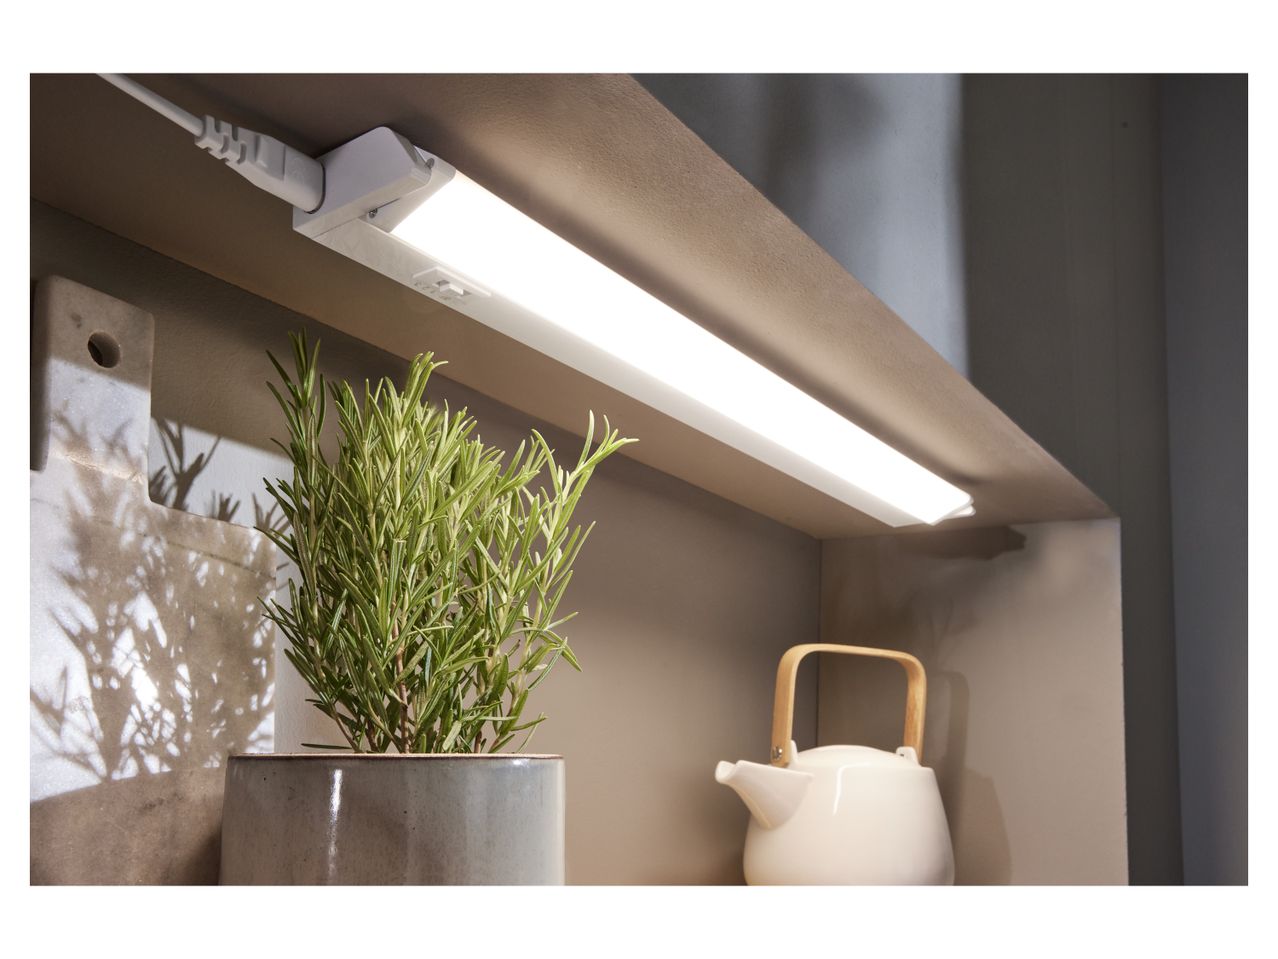 Lampada sottopensile a LED , prezzo 9.99 EUR 
Lampada sottopensile a LED Risparmia ...